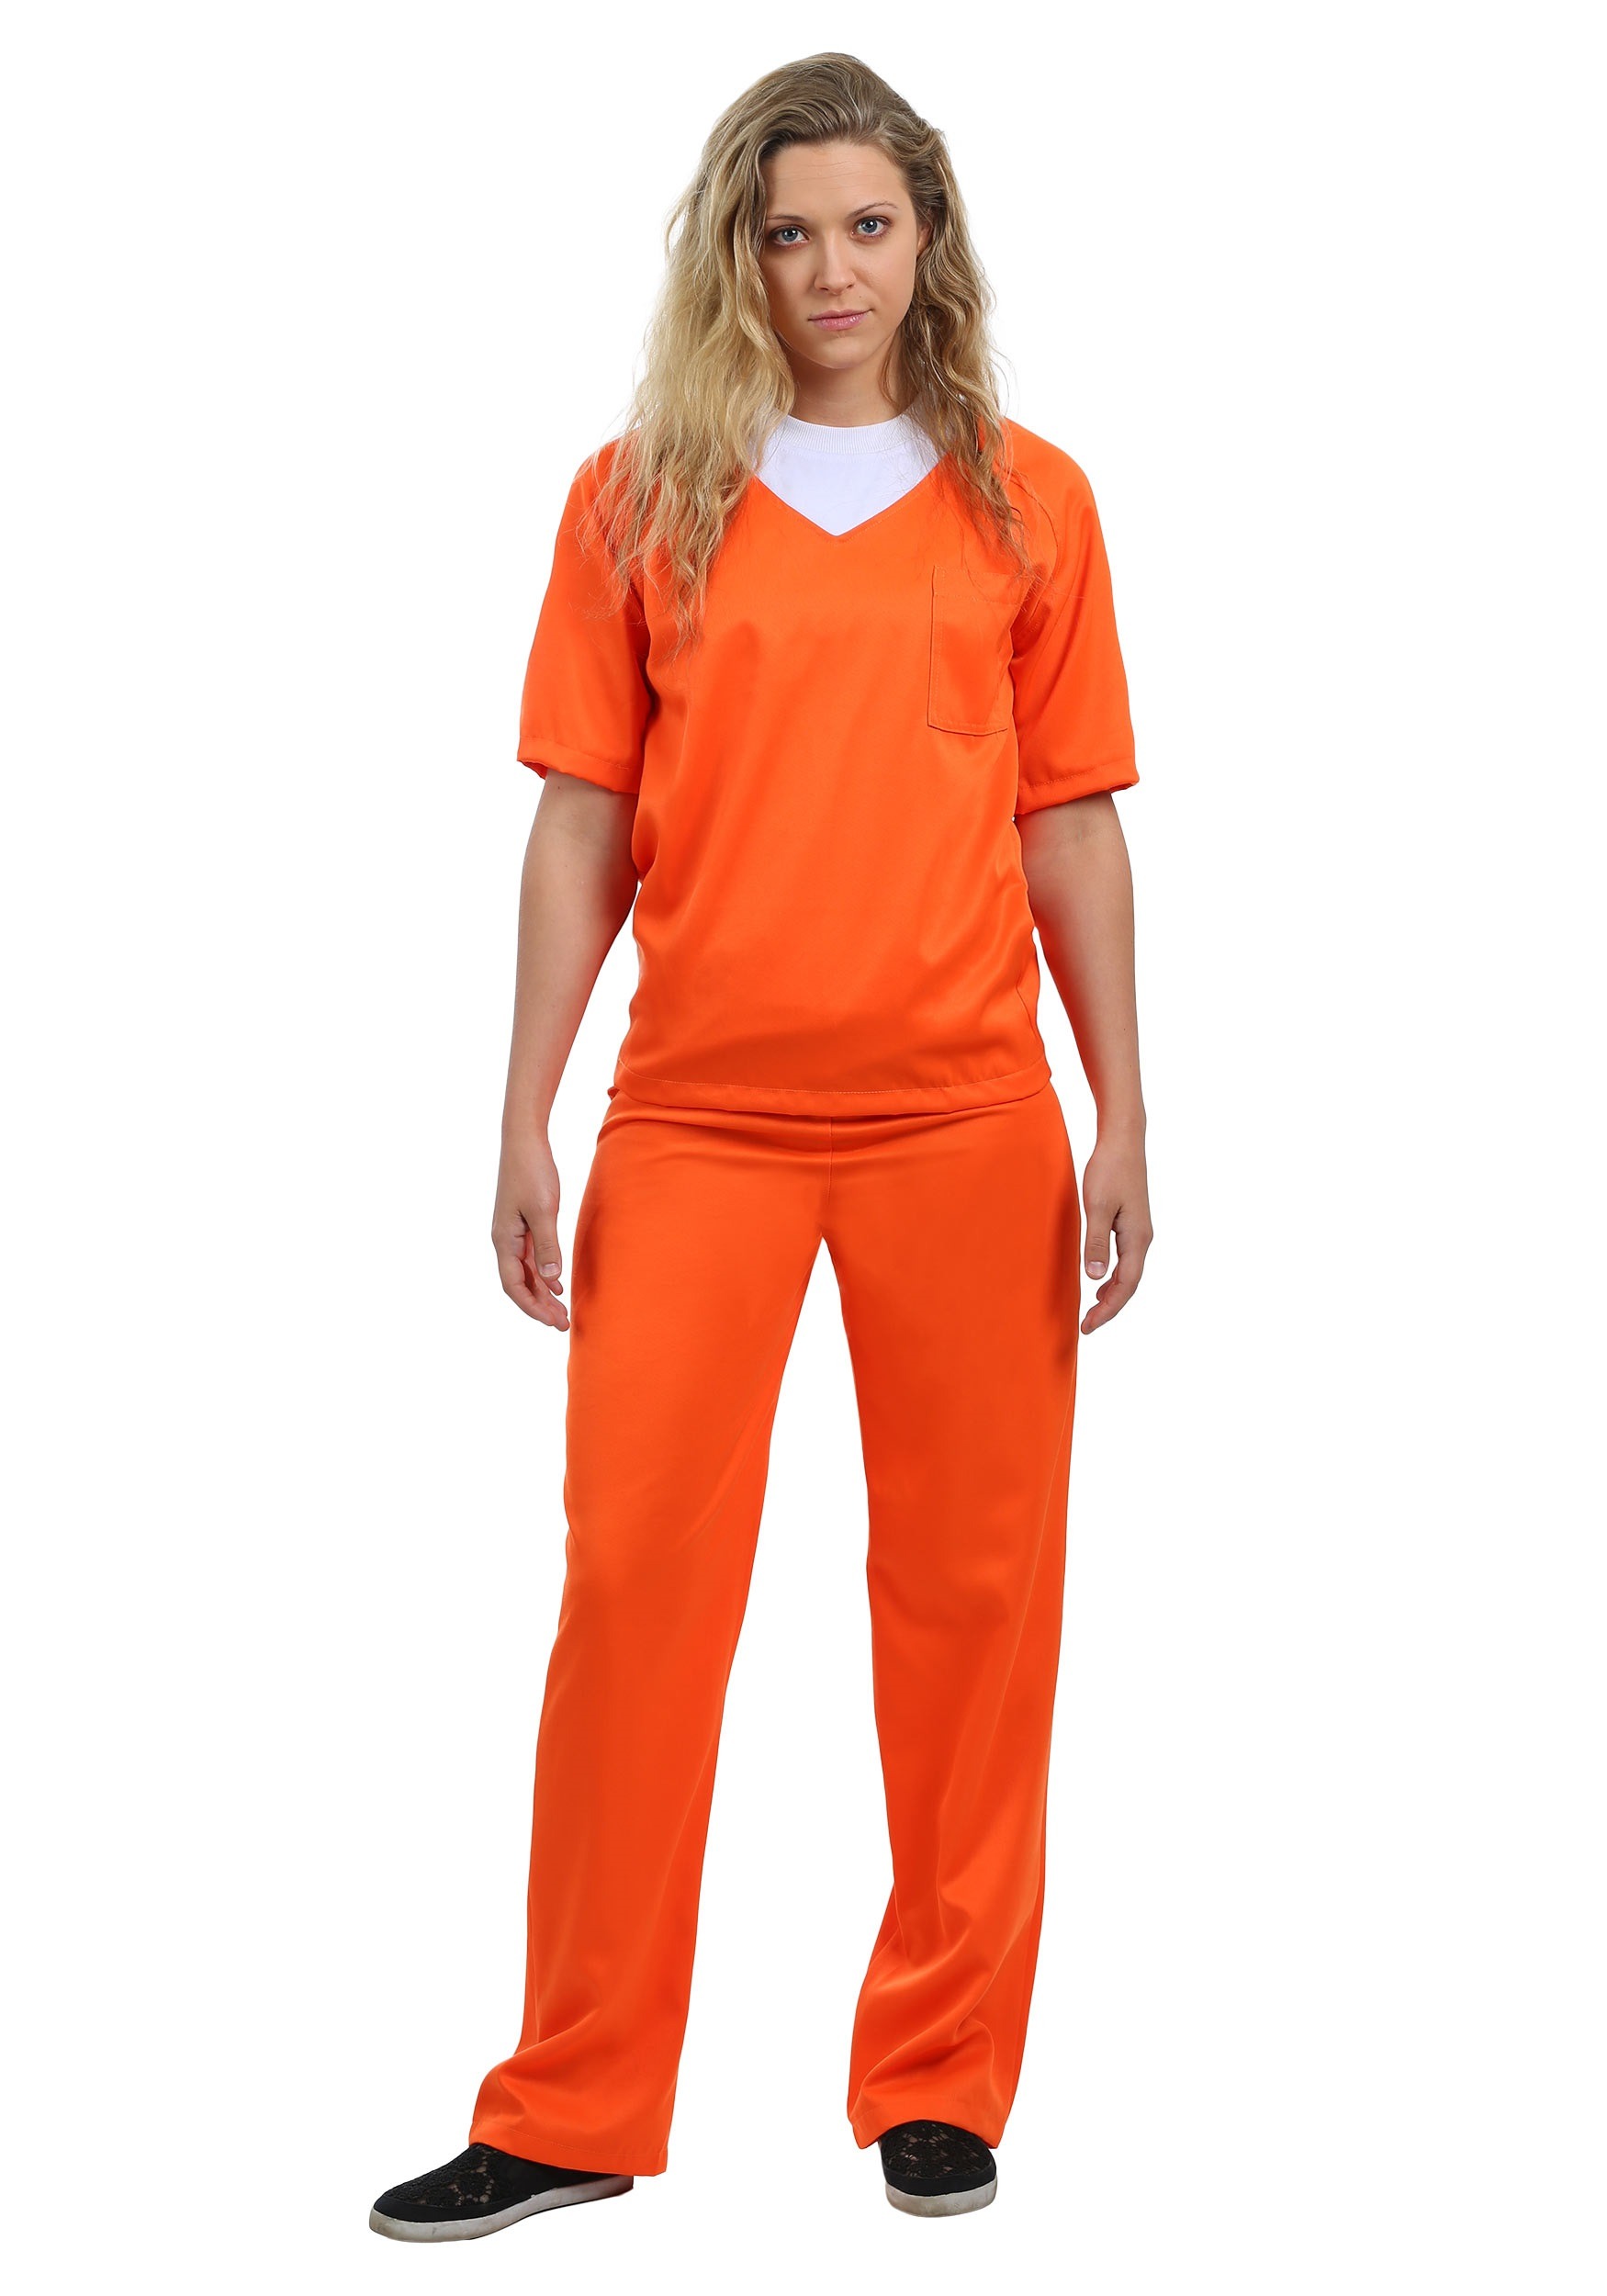 48++ Prisoner costume diy orange ideas in 2022 